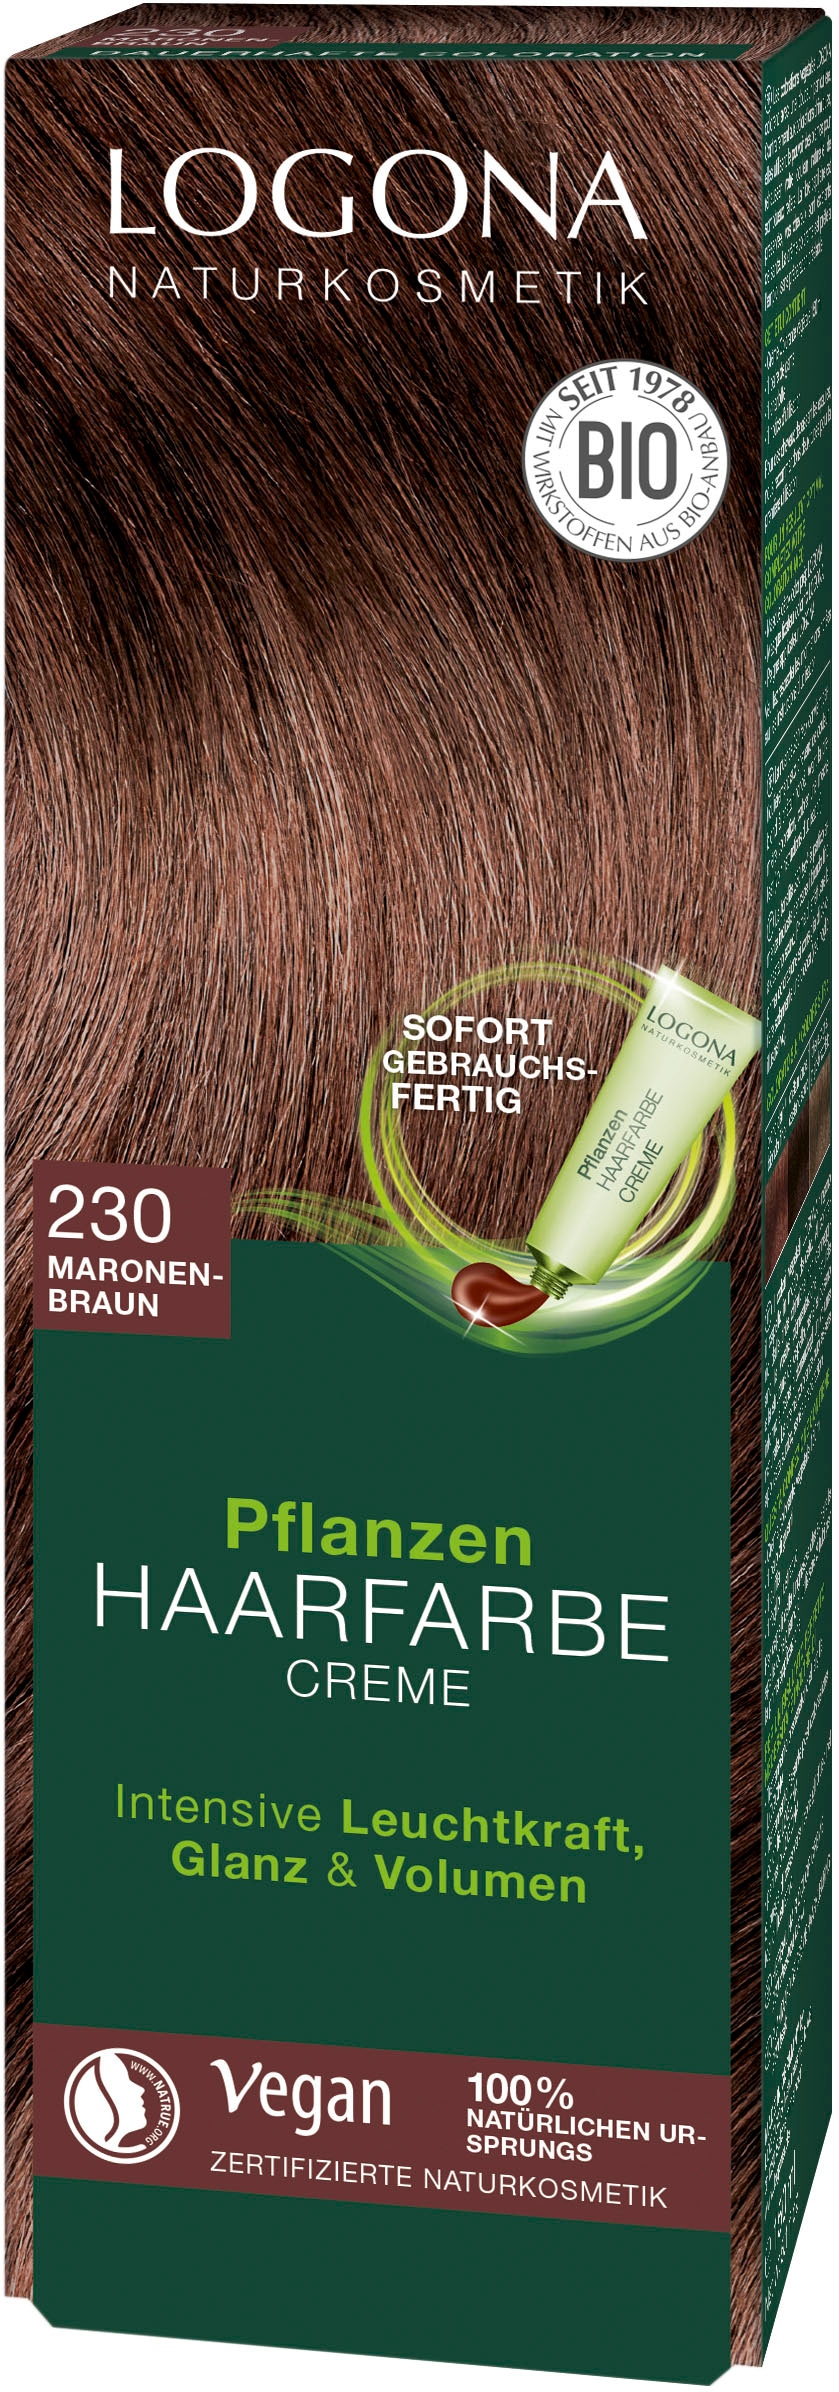 LOGONA Haarfarbe »Logona Pflanzen-Haarfarbe 3 Creme« Jahren XXL mit Garantie